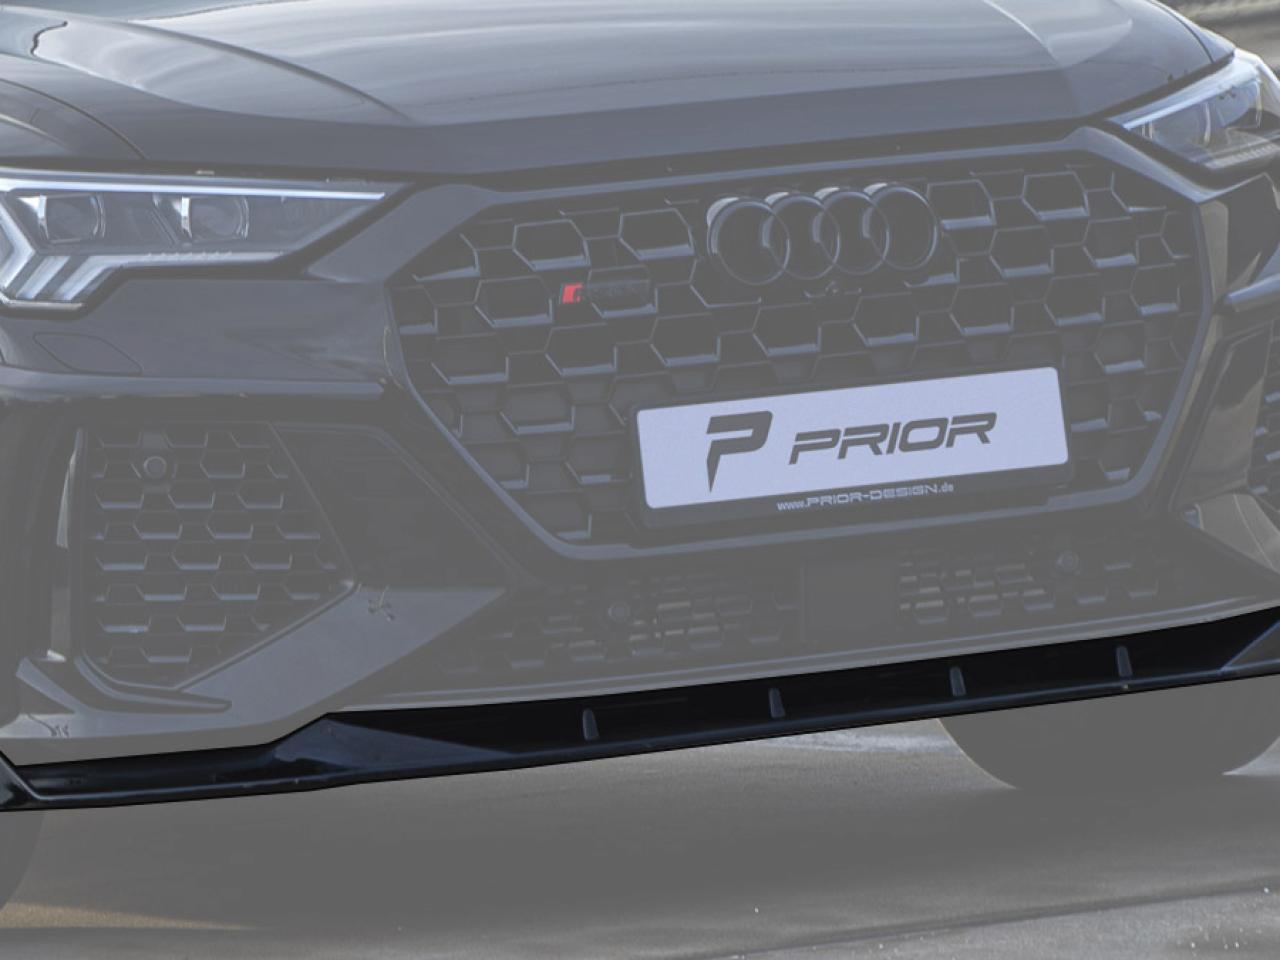 PD-RS400 Frontspoiler für Audi RSQ3 Sportback [2019+]